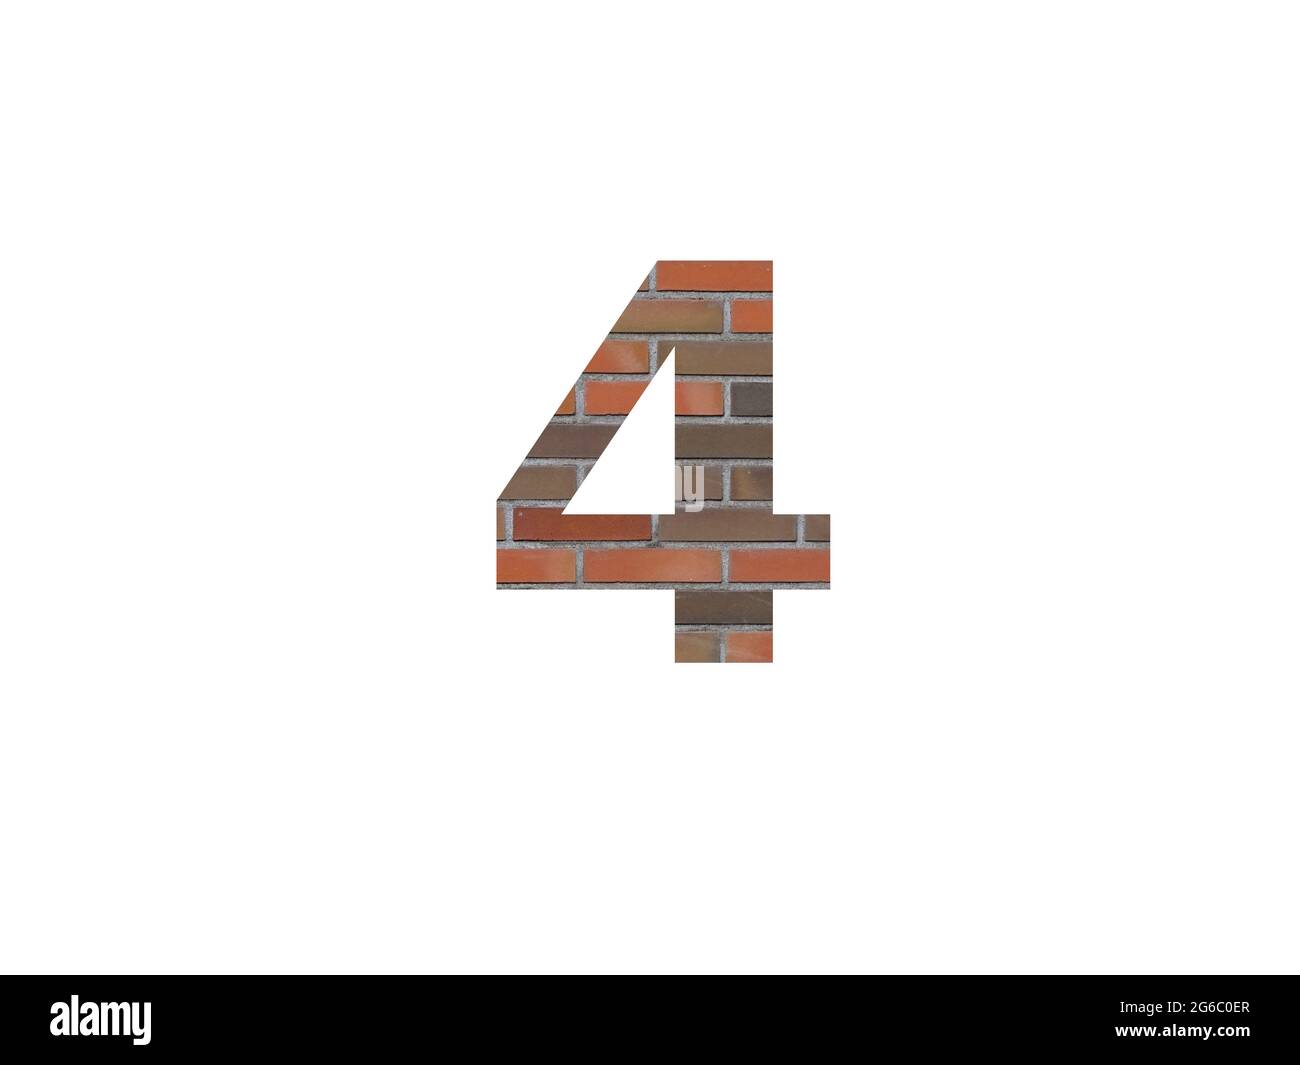 numéro 4 de l'alphabet fait avec mur de briques, en marron, orange, rouge gris et isolé sur un fond blanc Banque D'Images